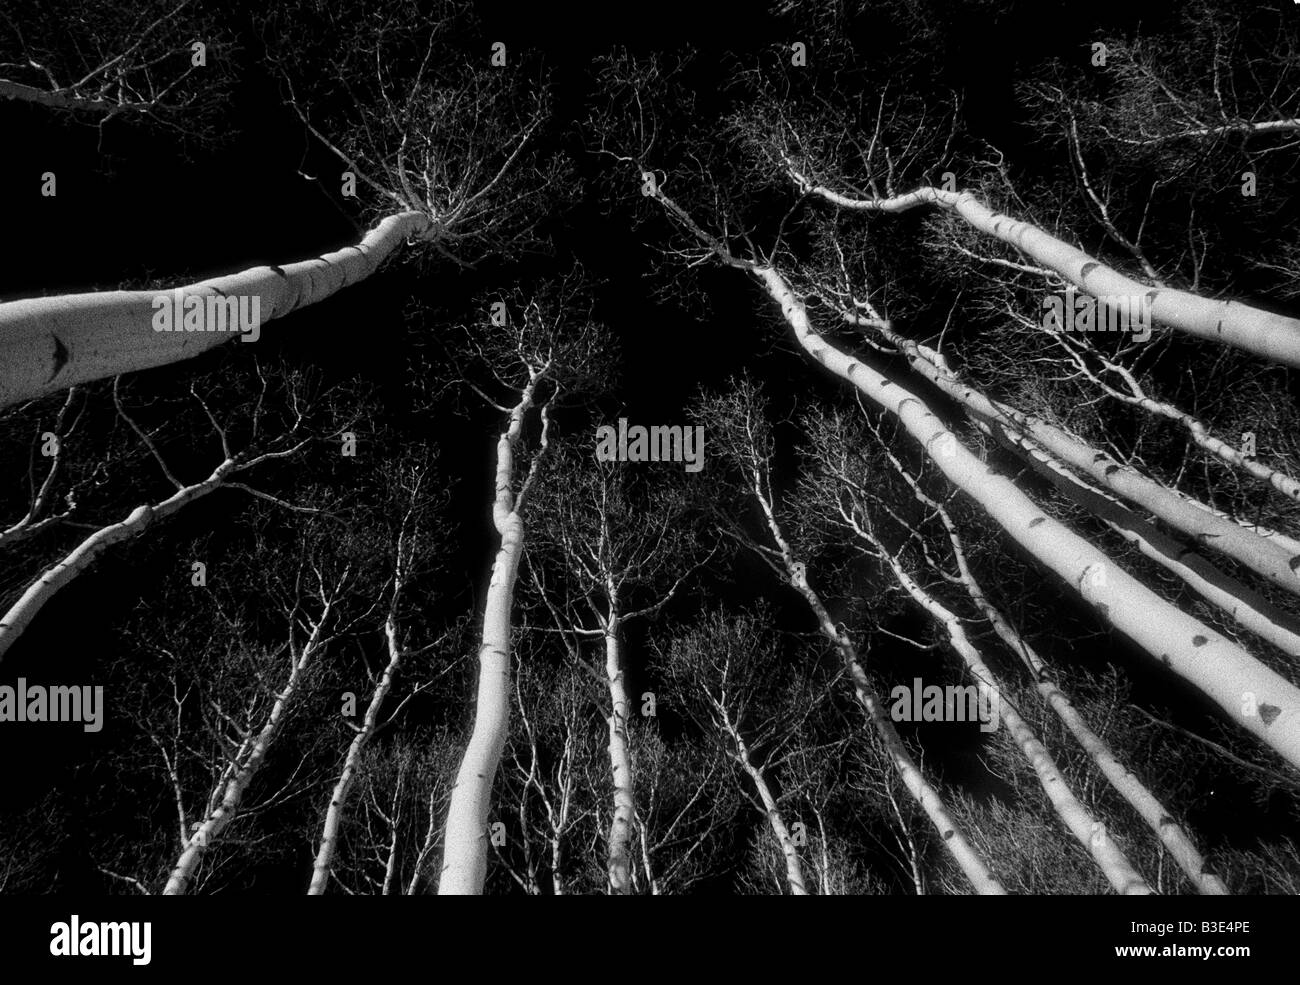 White aspen alberi in un buio cielo chiaro, bianco e nero Foto Stock